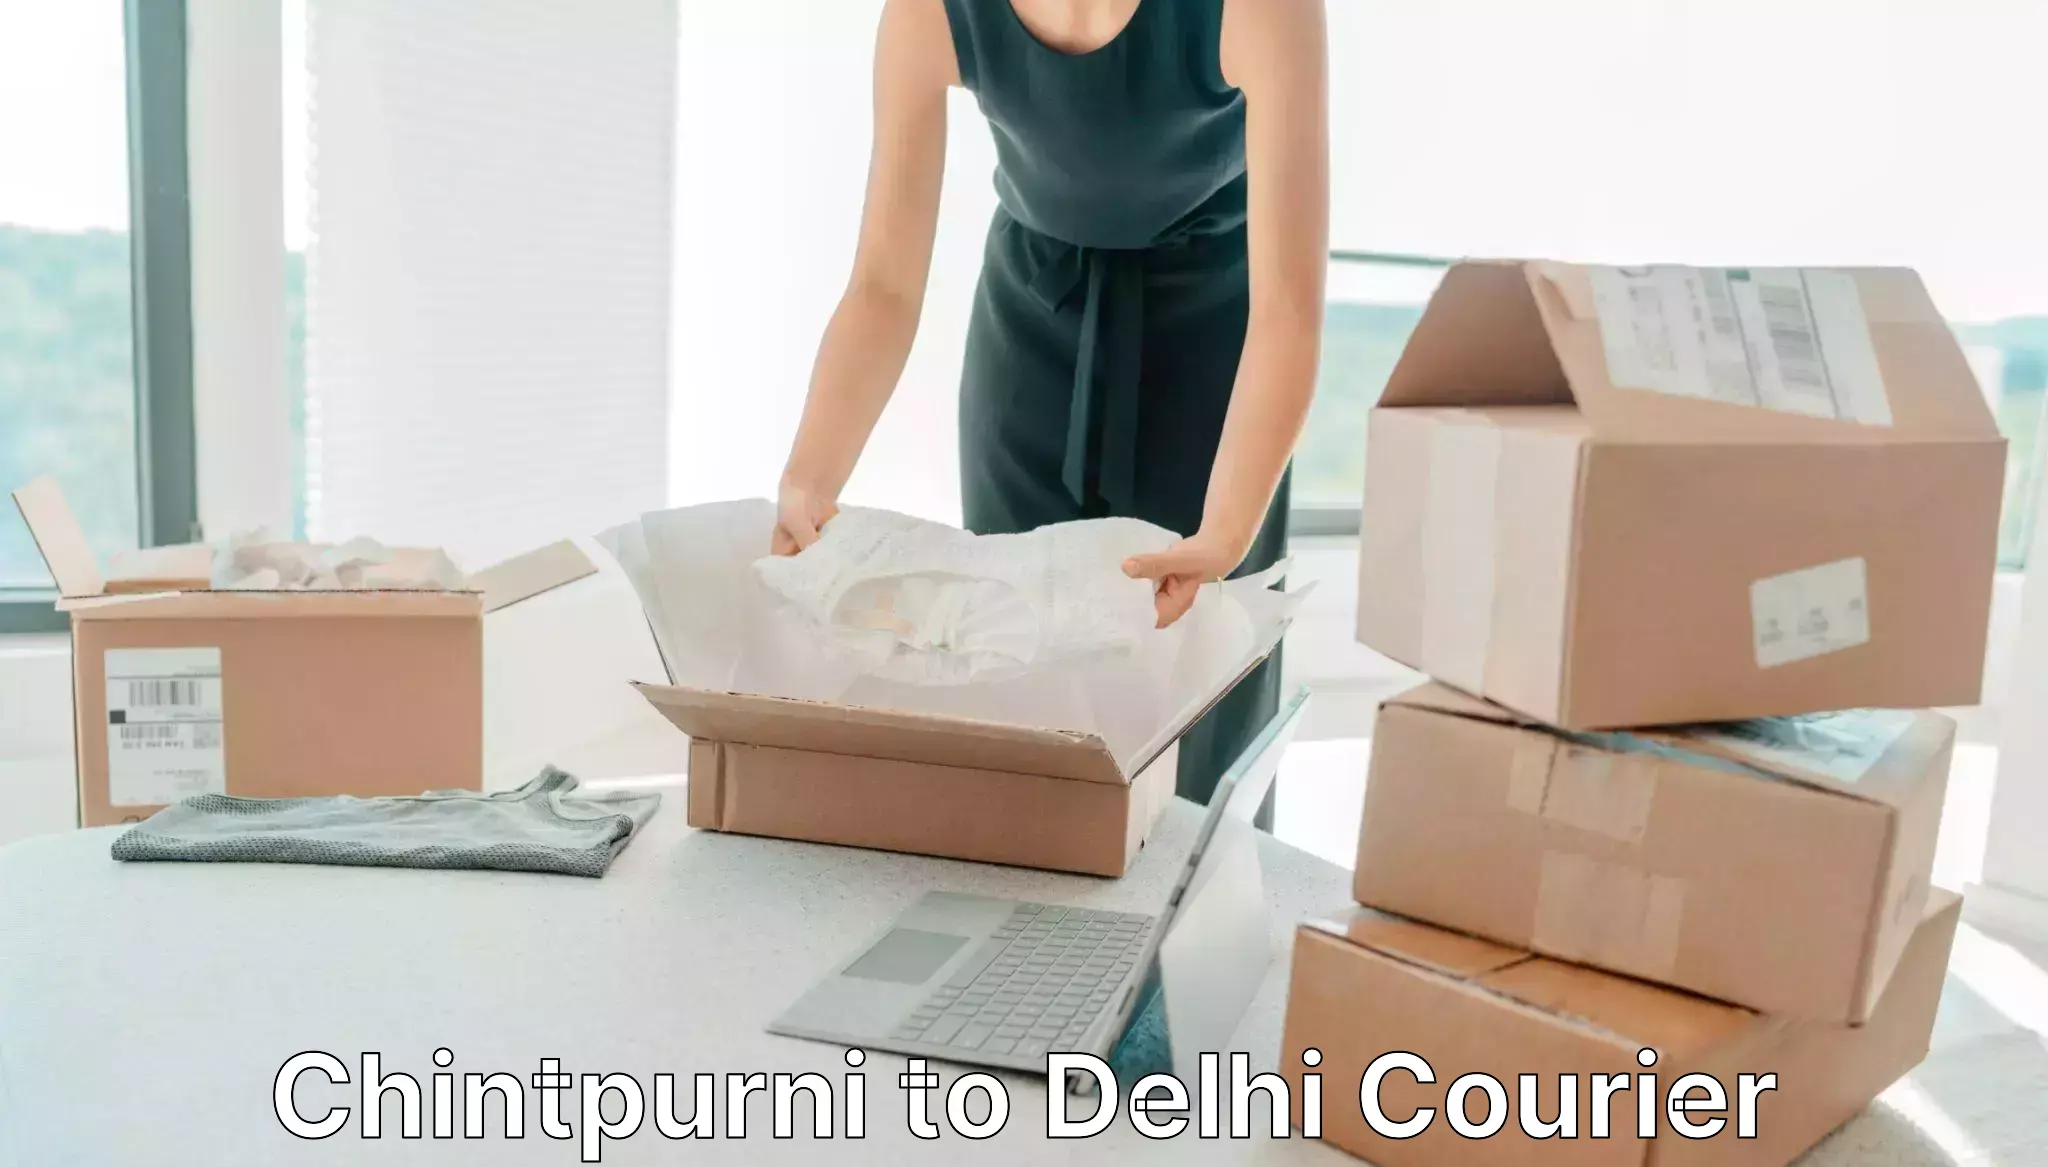 Speedy delivery service in Chintpurni to Jamia Millia Islamia New Delhi